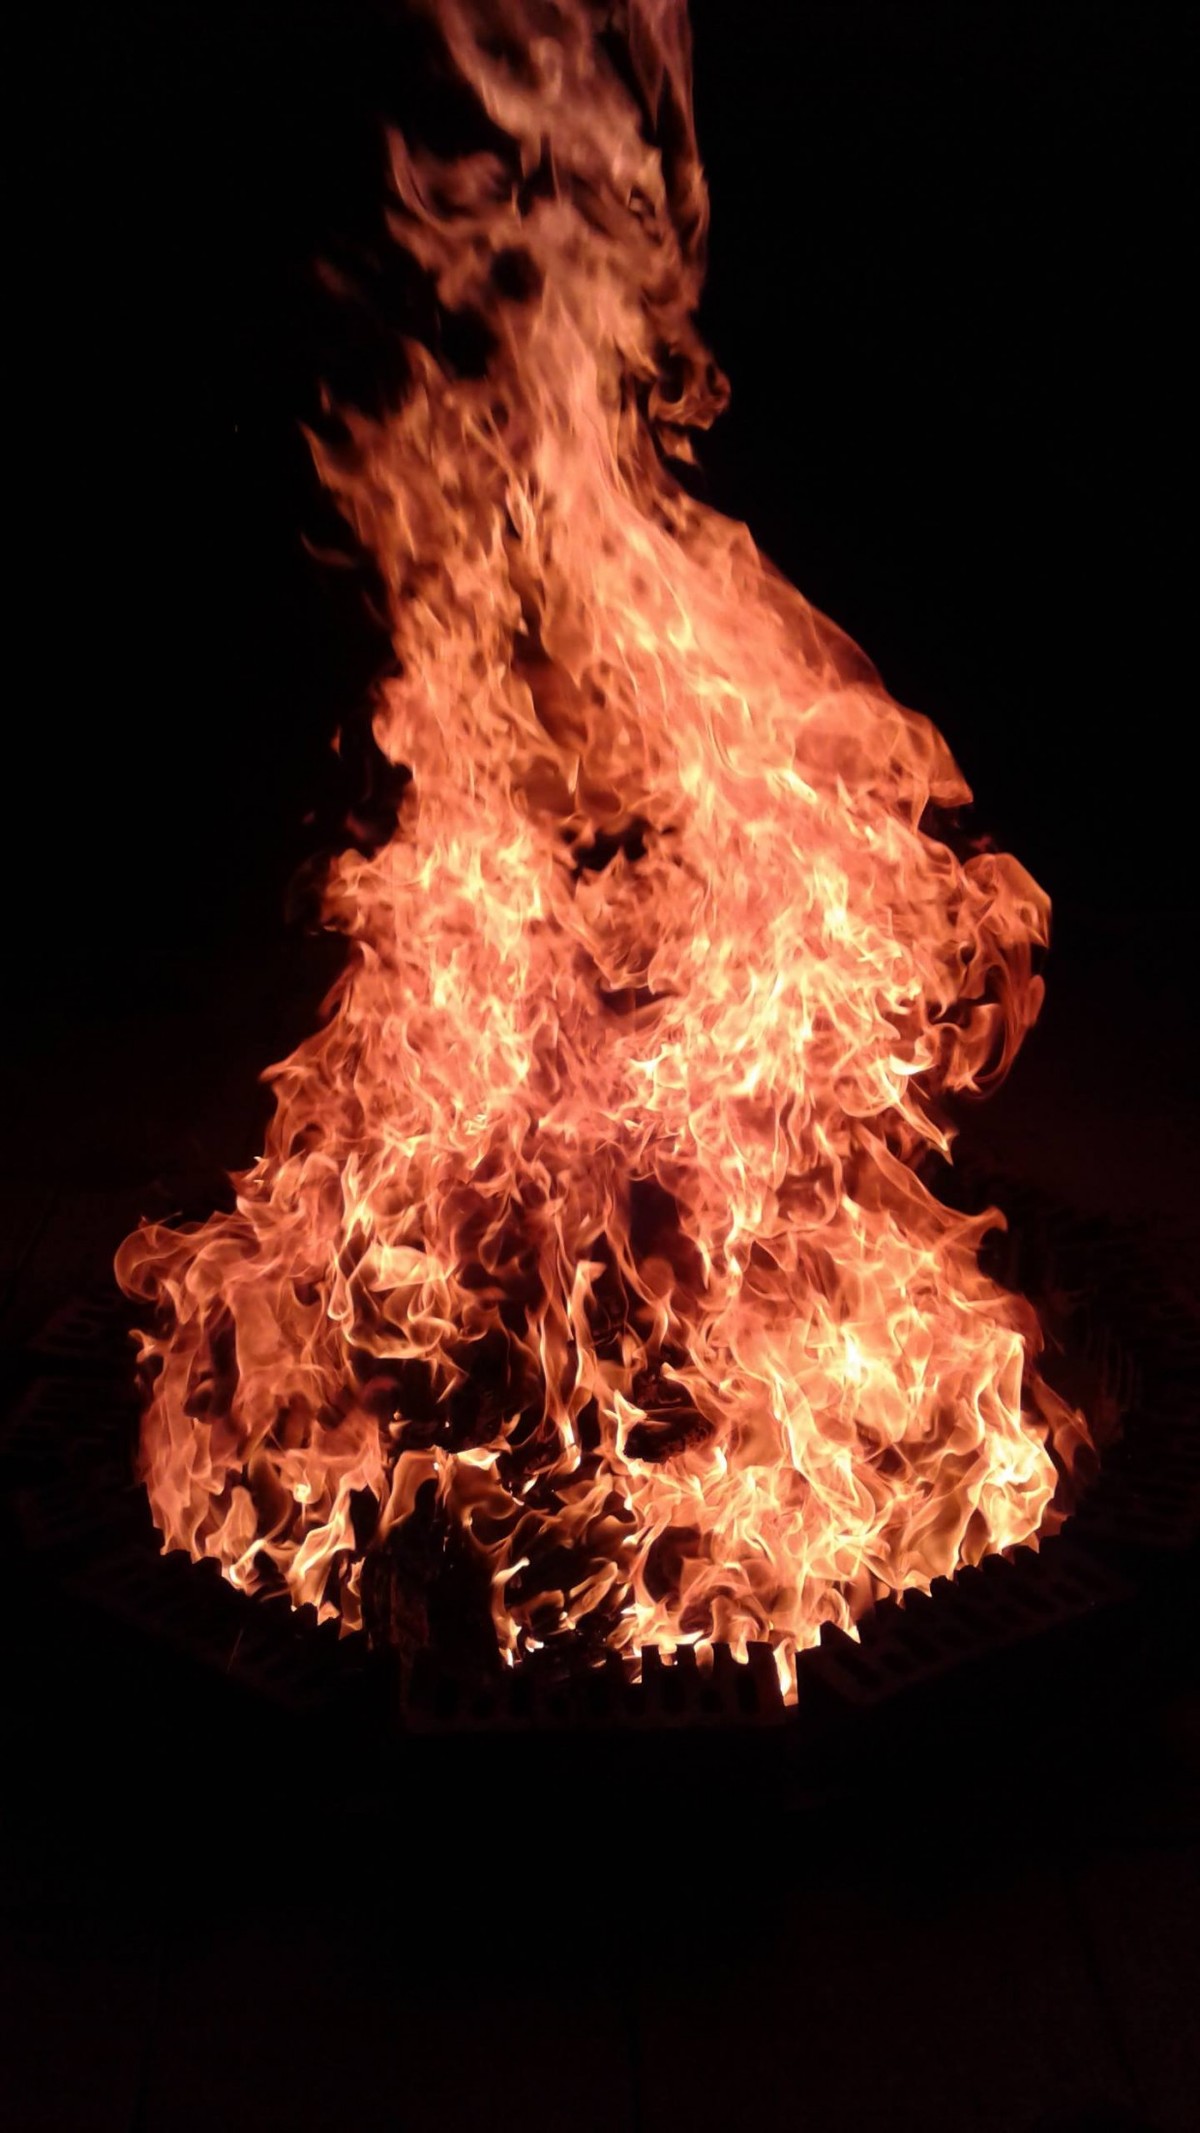 Главе Якутии отправили фото дракона в огне